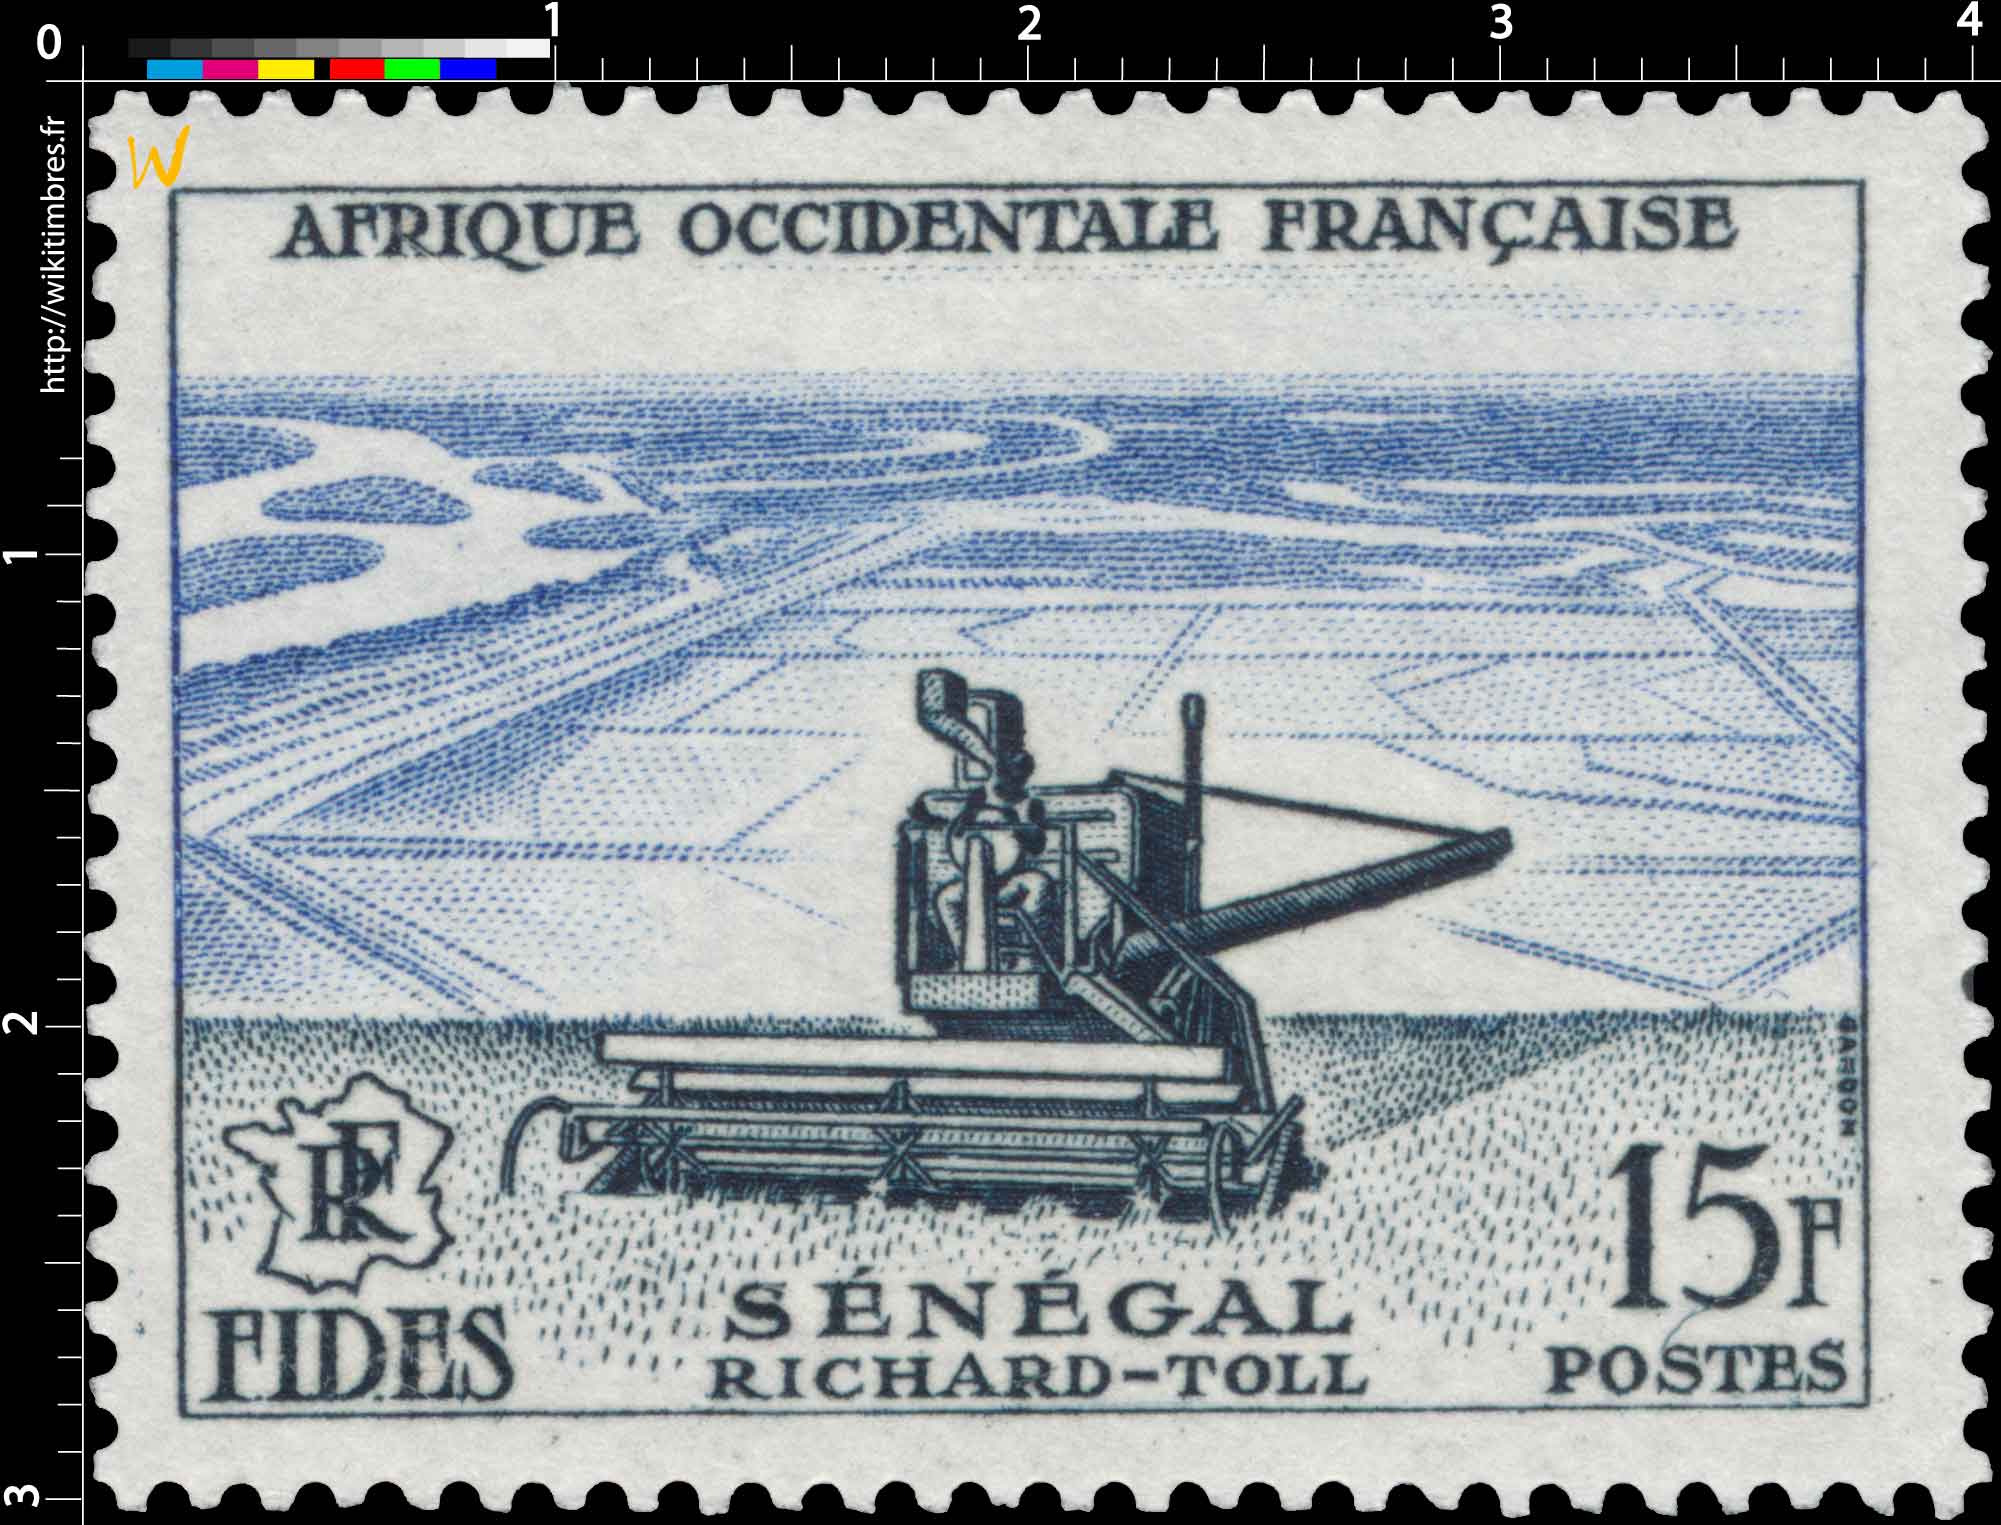 Afrique Occidentale Française - F.I.D.E.S. - Richard-Toll Sénégal